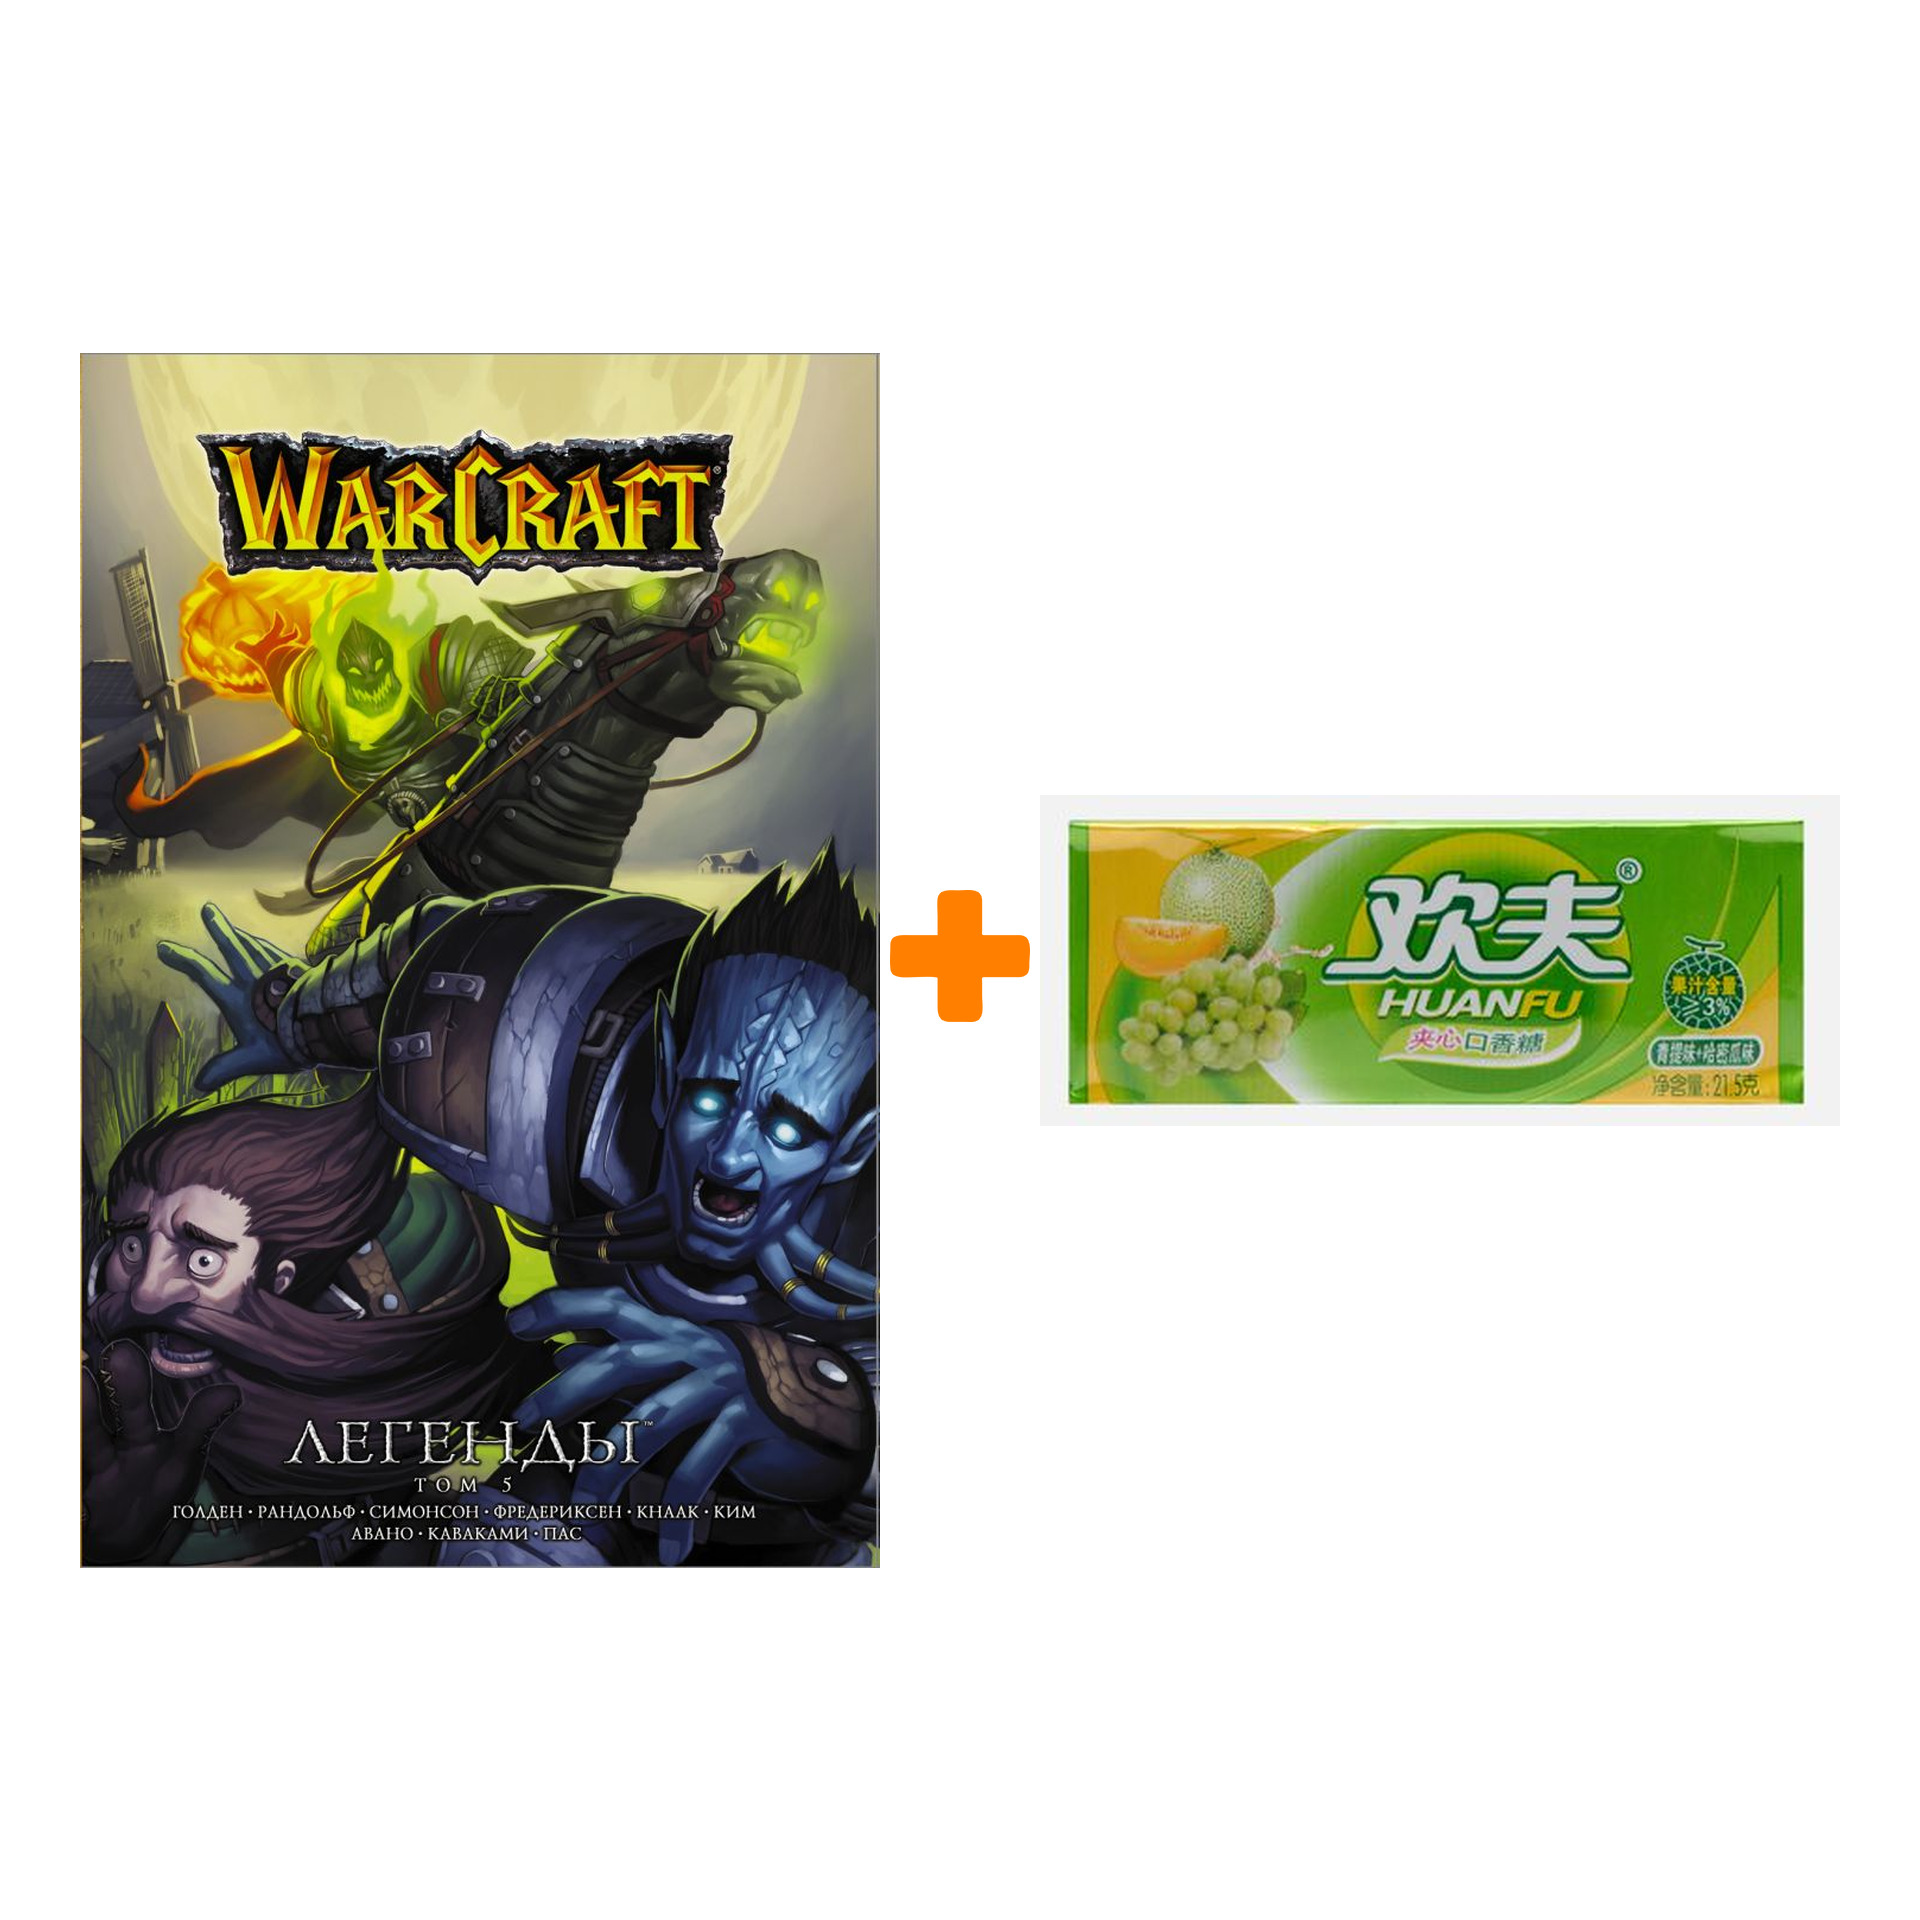 Набор Манга World Of Warcraft Легенды Том 5 + Жевательная резинка Huanfu Grape & Melon Вкус винограда и дыни